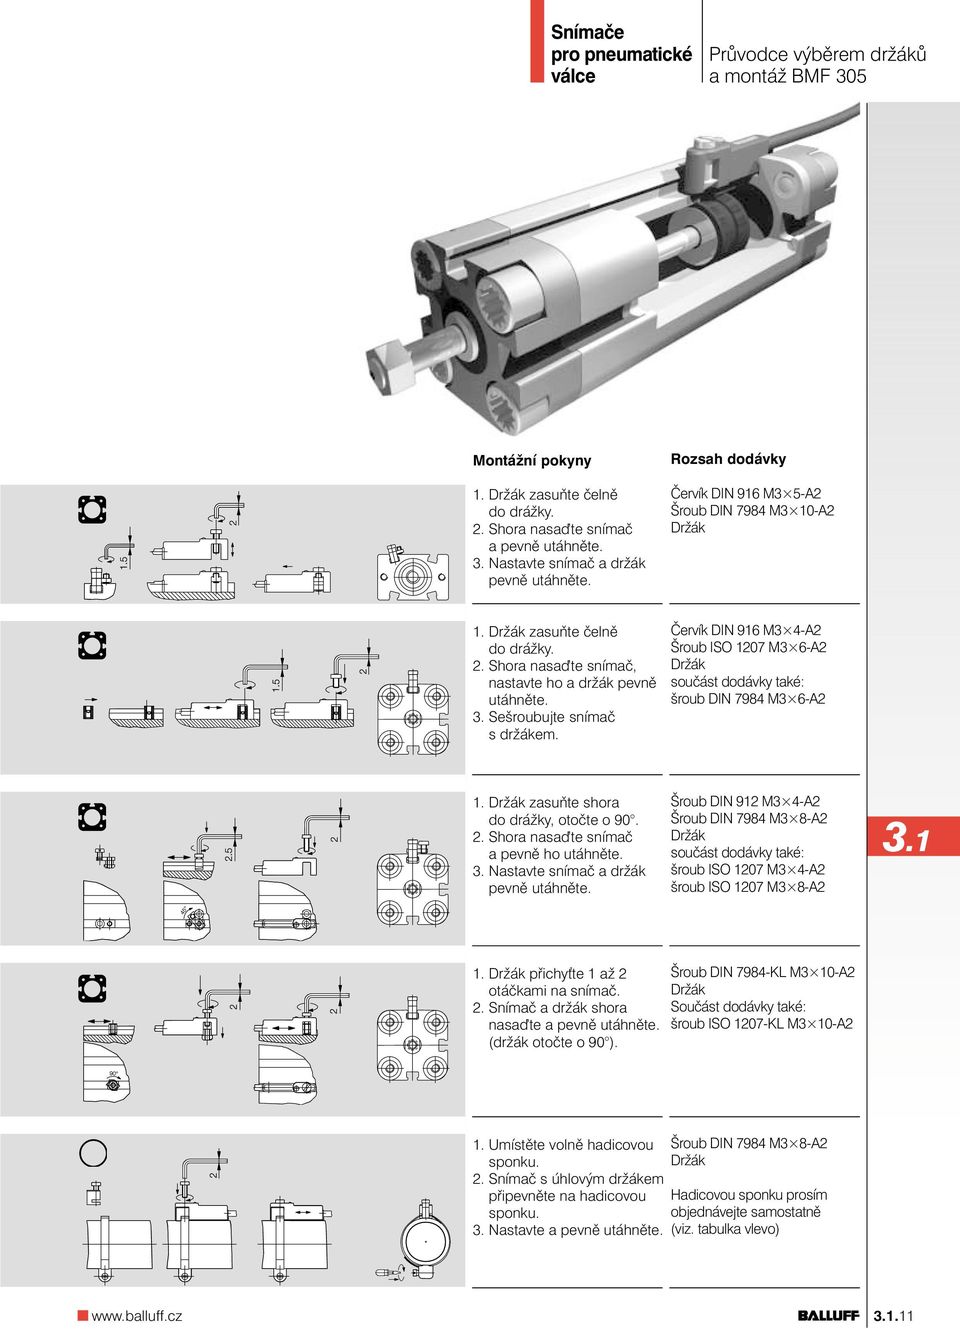 Červík DIN 916 M3 4-A2 Šroub ISO 1207 M3 6-A2 součást dodávky také: šroub DIN 7984 M3 6-A2 1. zasuňte shora do drážky, otočte o 90. 2. Shora nasa te snímač a pevně ho utáhněte. 3.